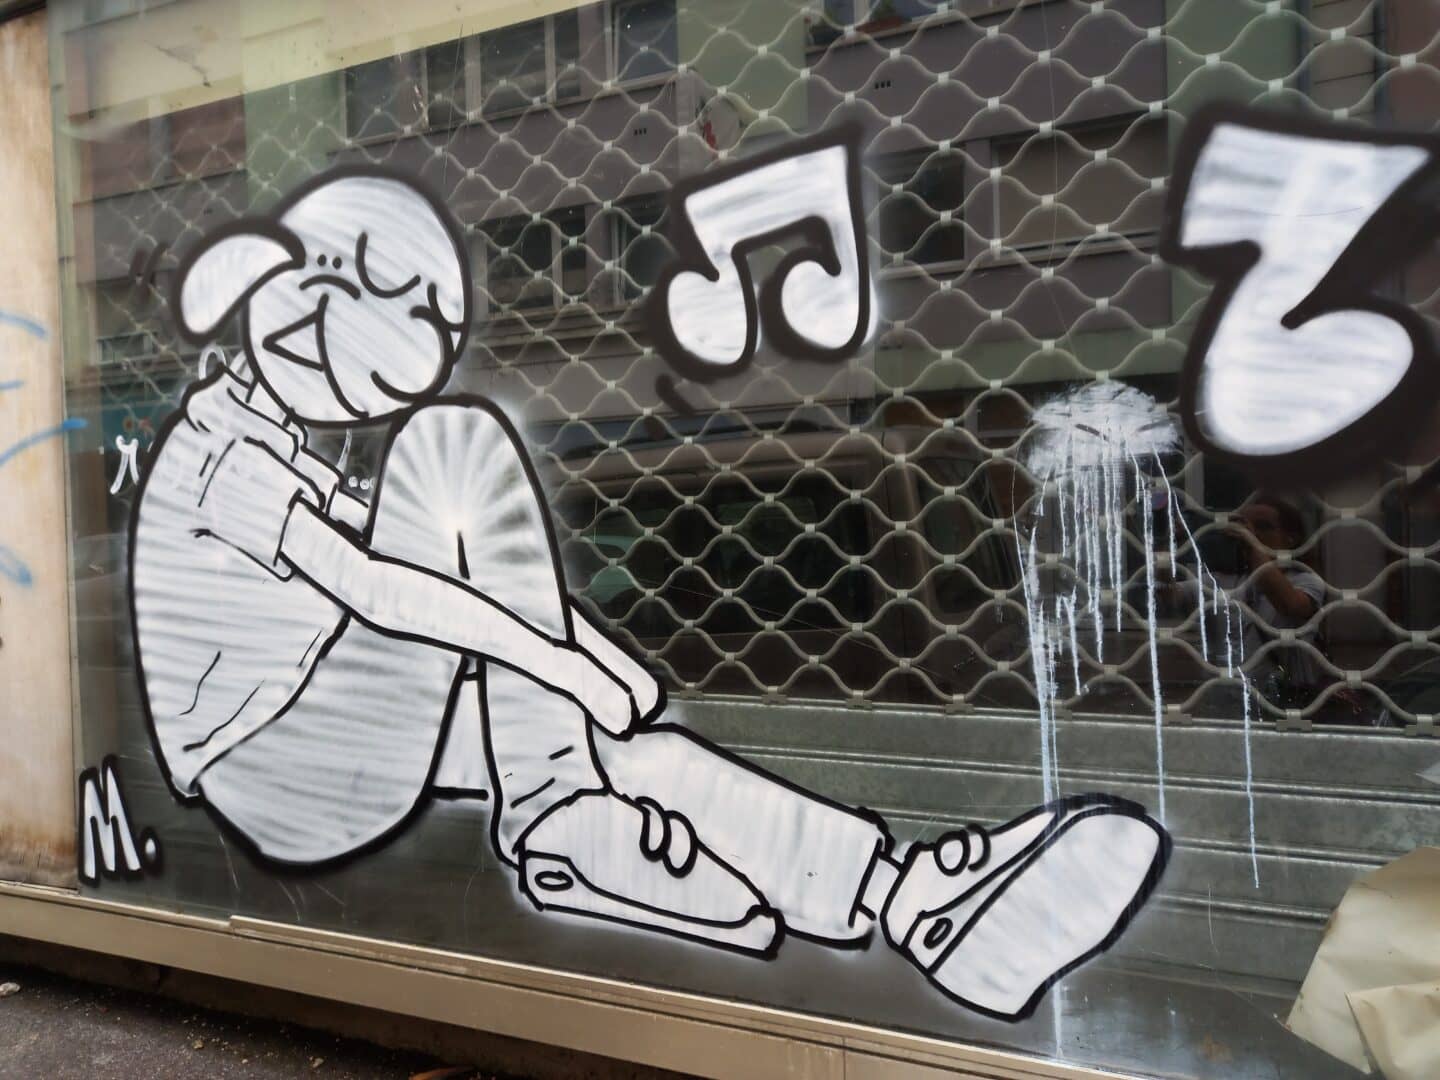 [Justine CM] Belfort, rue parallèle à la rue piétonne et la gare. Photo prise en août 2022. Personnage dessiné sur la vitre d'un ancien magasin, assis, un genou relevé, souriant, tout en blanc. Note de musiques autour.